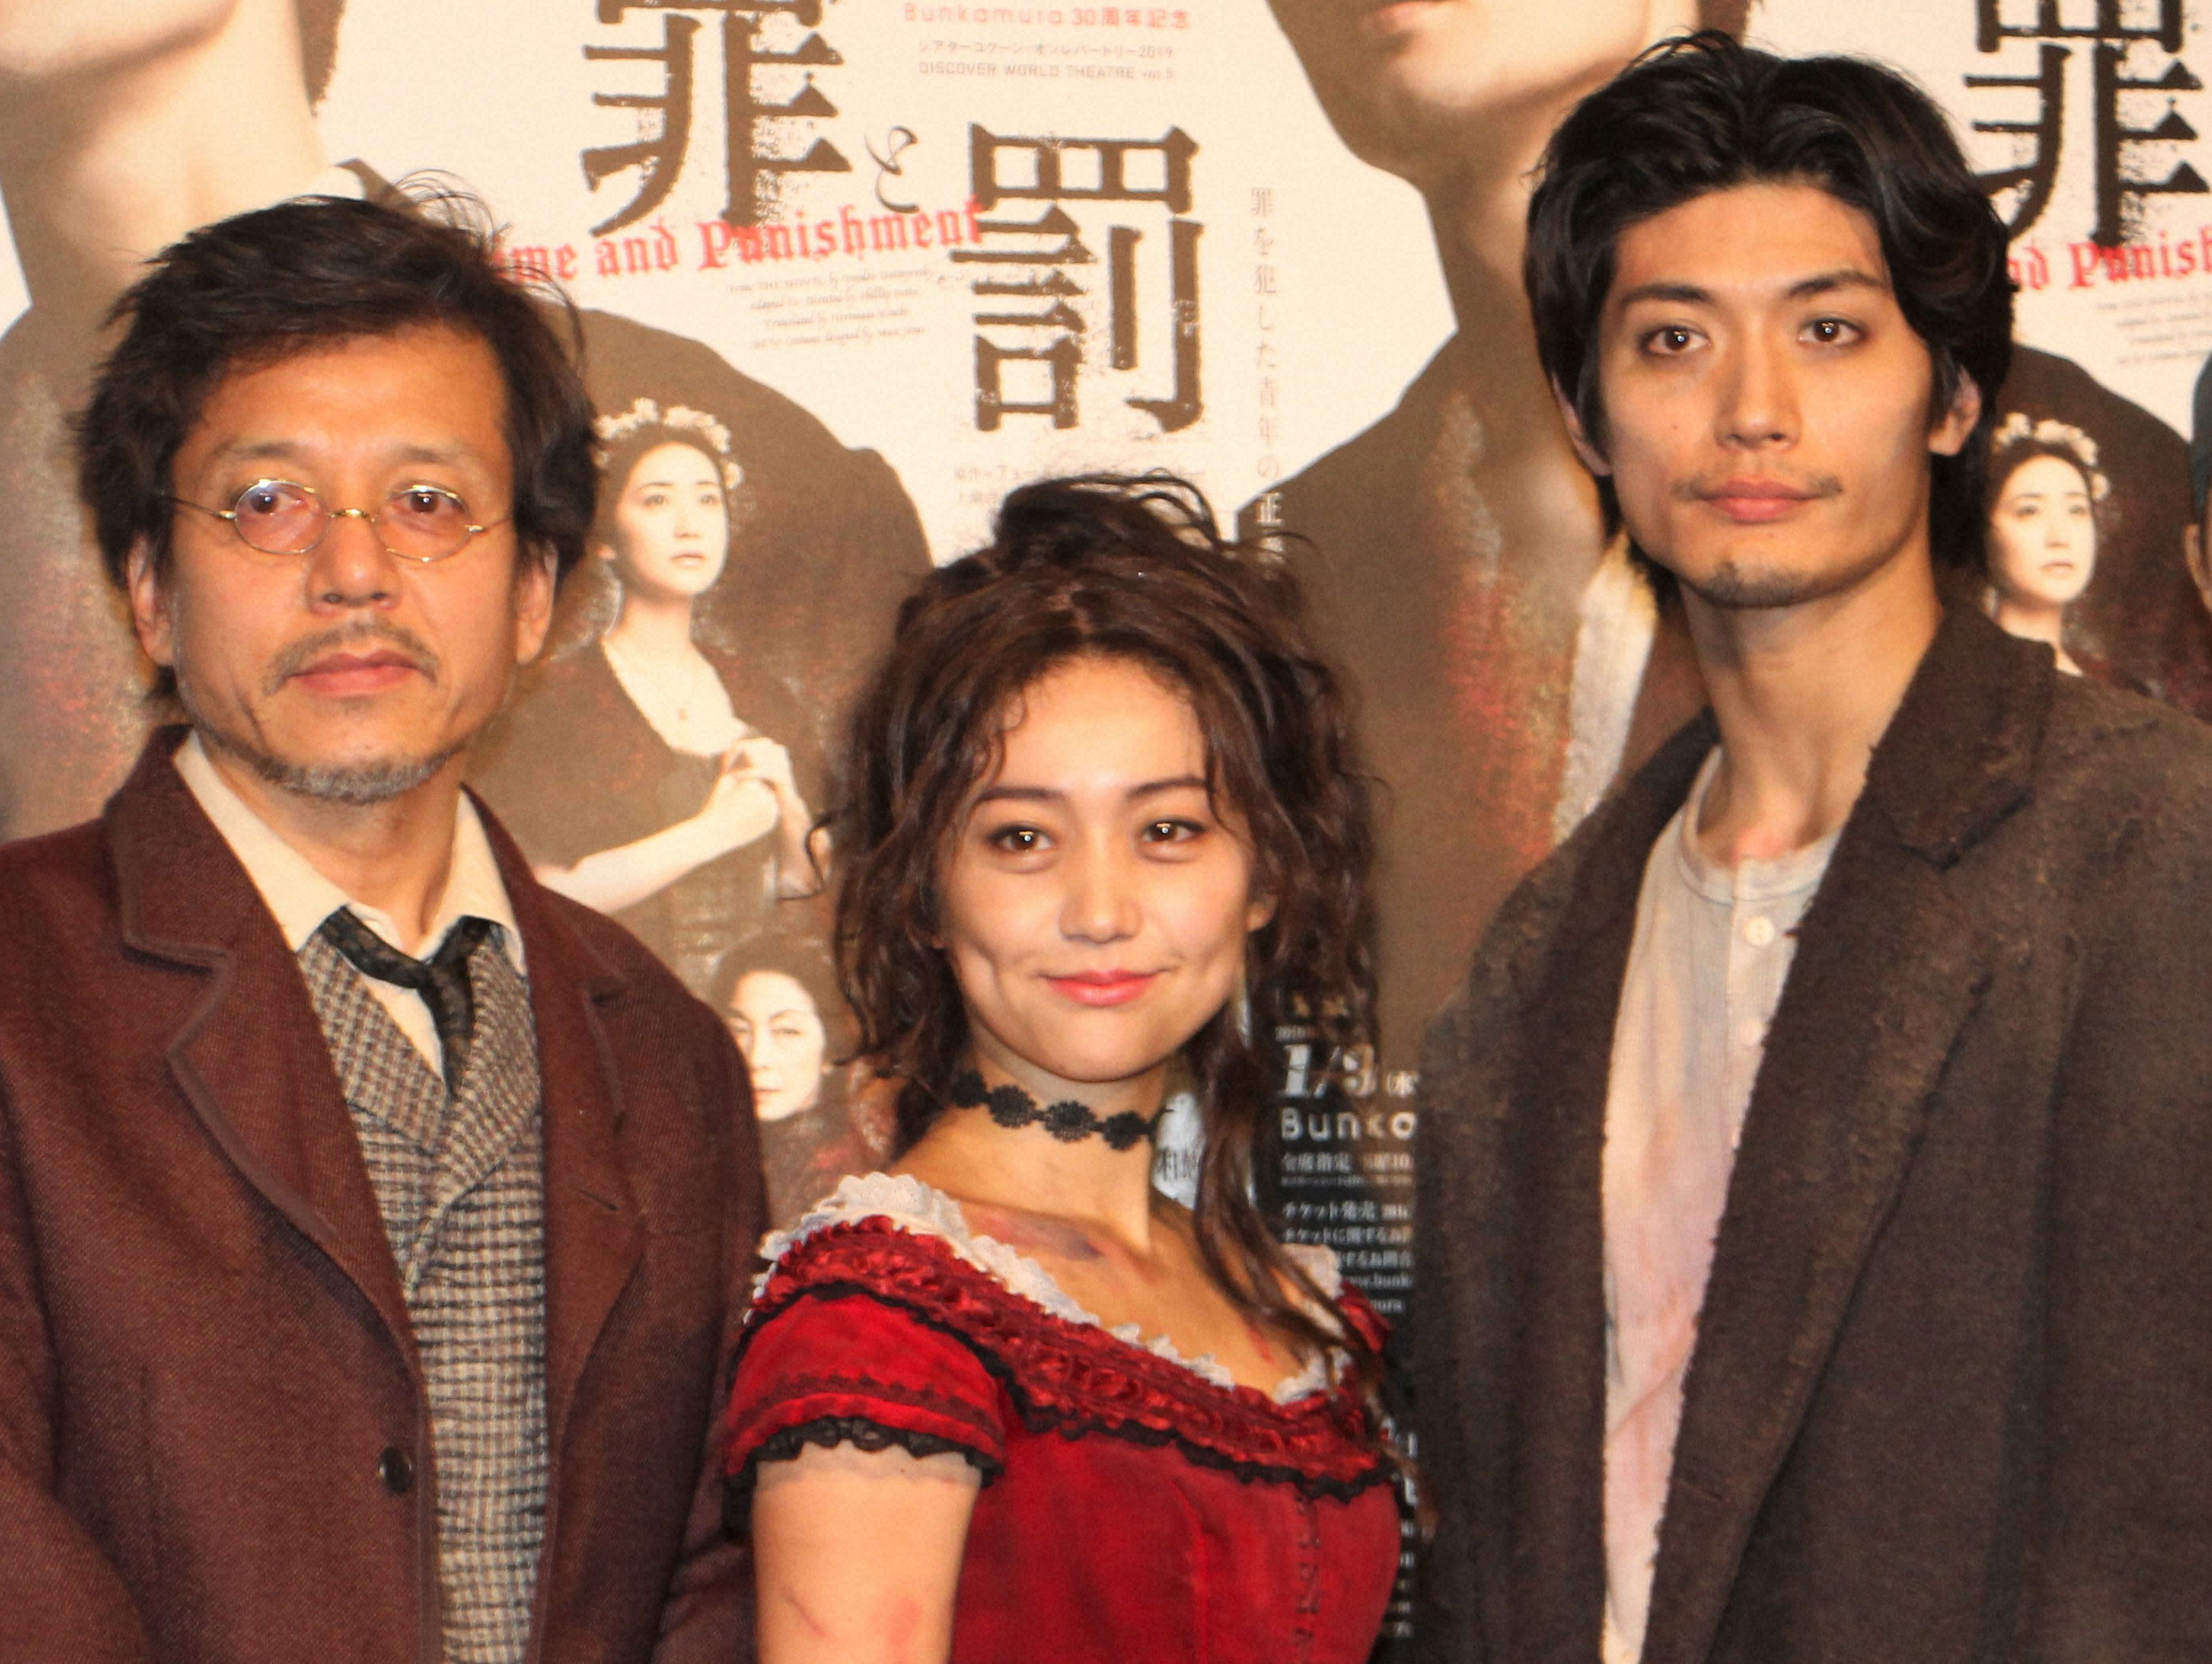 舞台「罪と罰」で共演した際の（左から勝村政信、大島優子、三浦春馬さん（19年1月撮影）